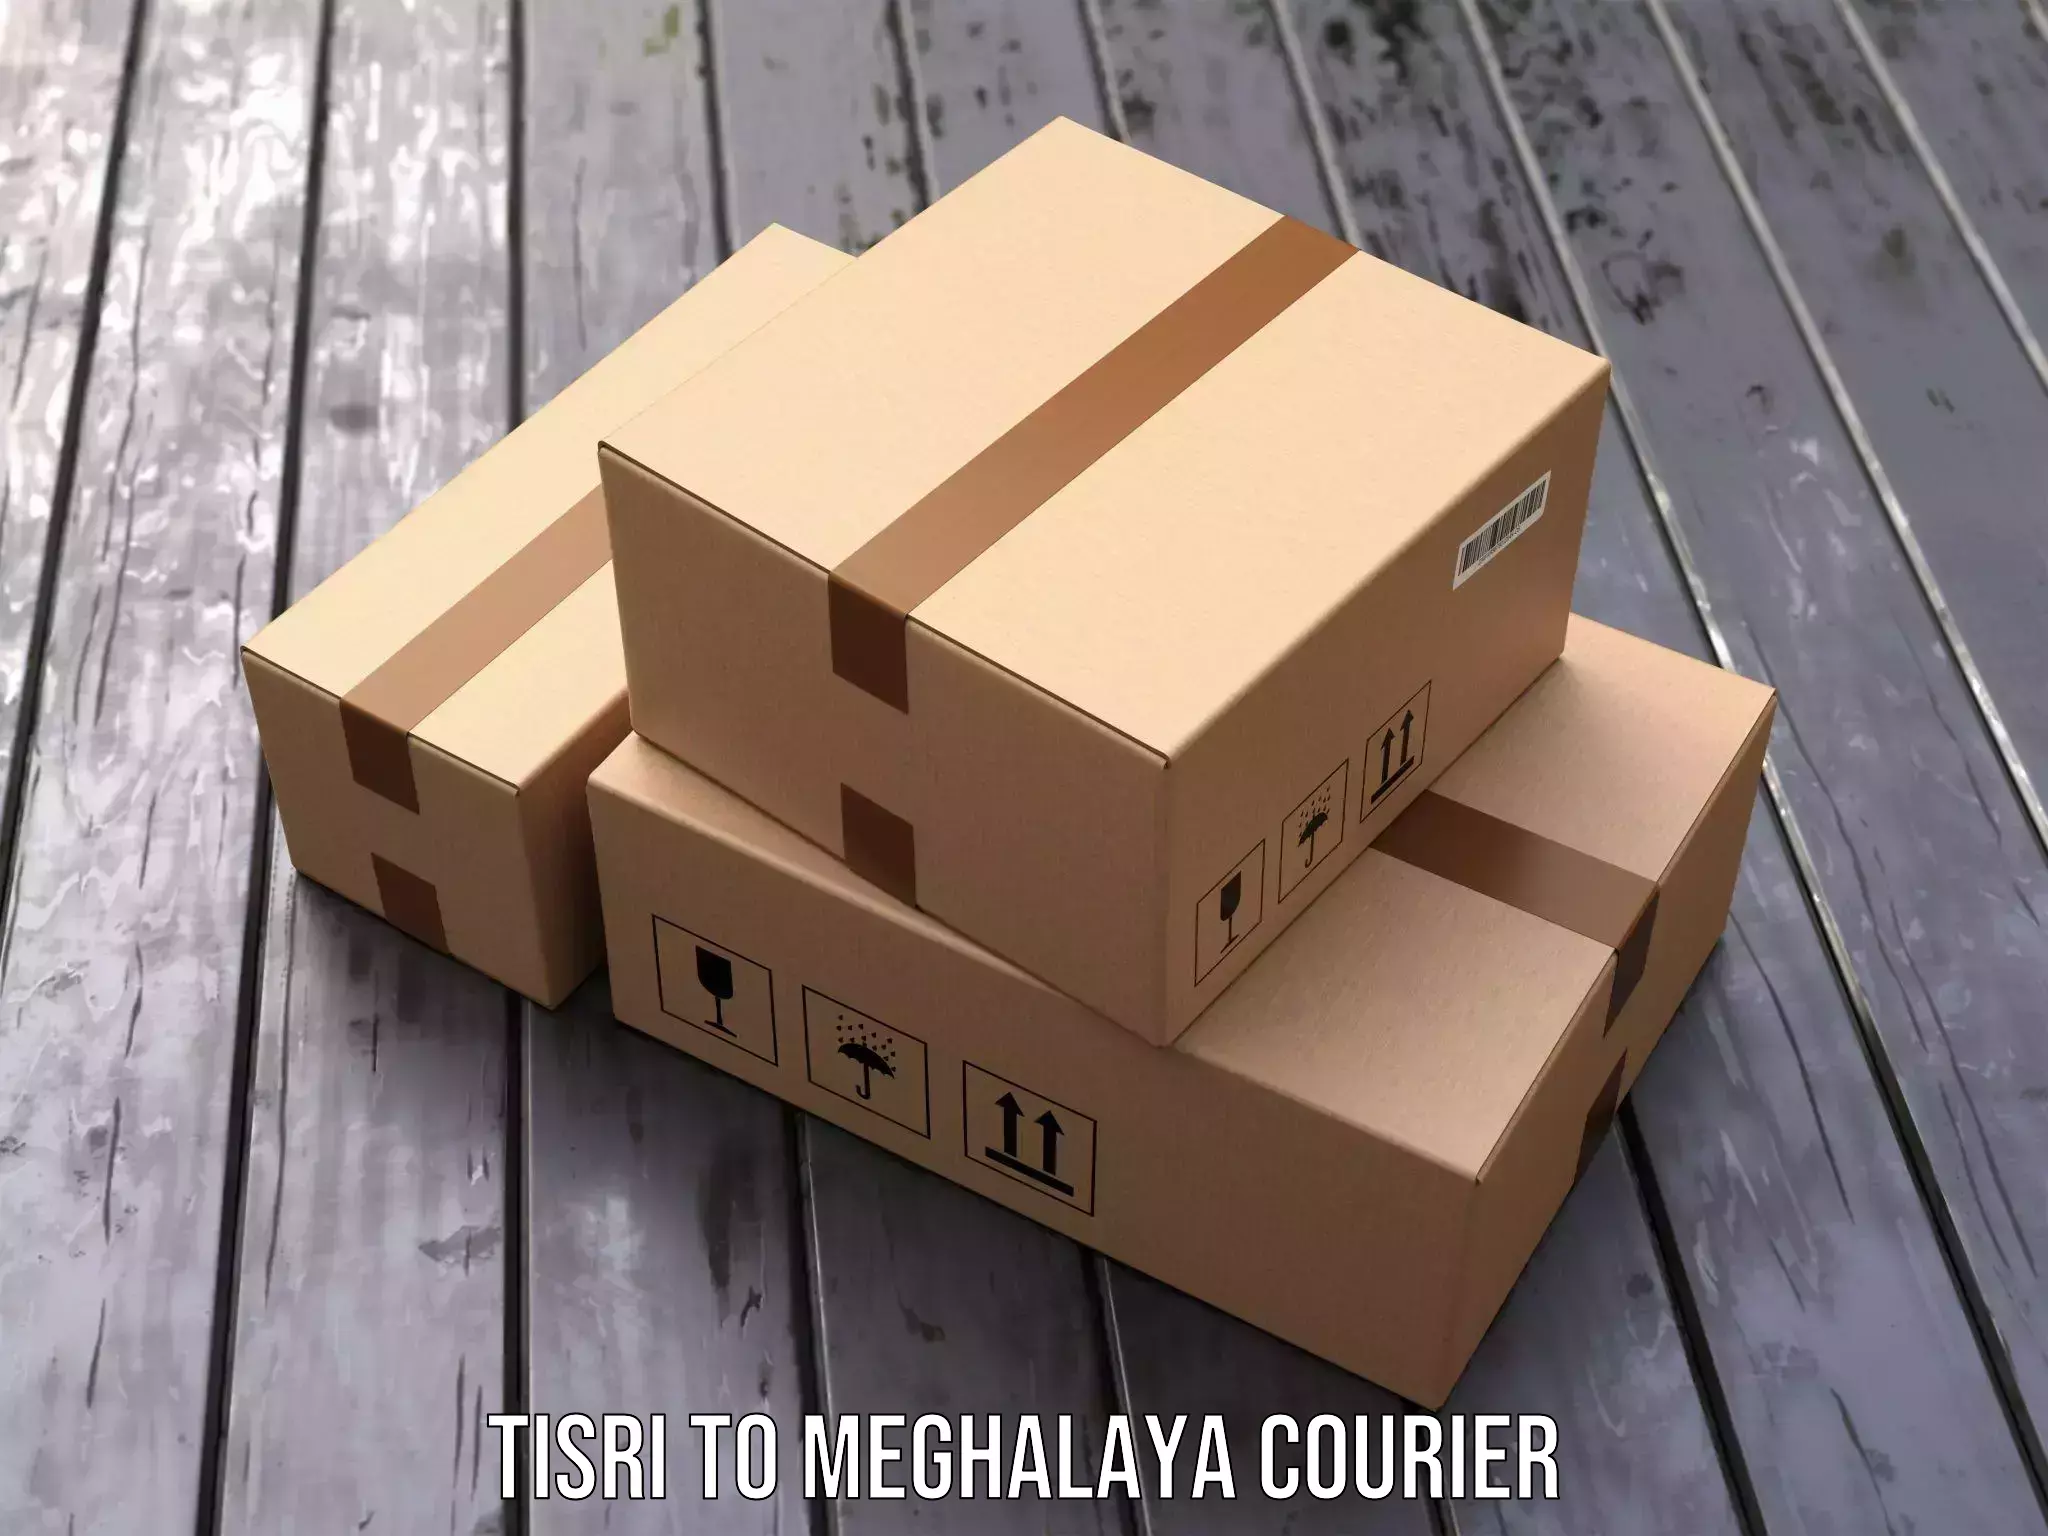 Courier service comparison in Tisri to Nongpoh